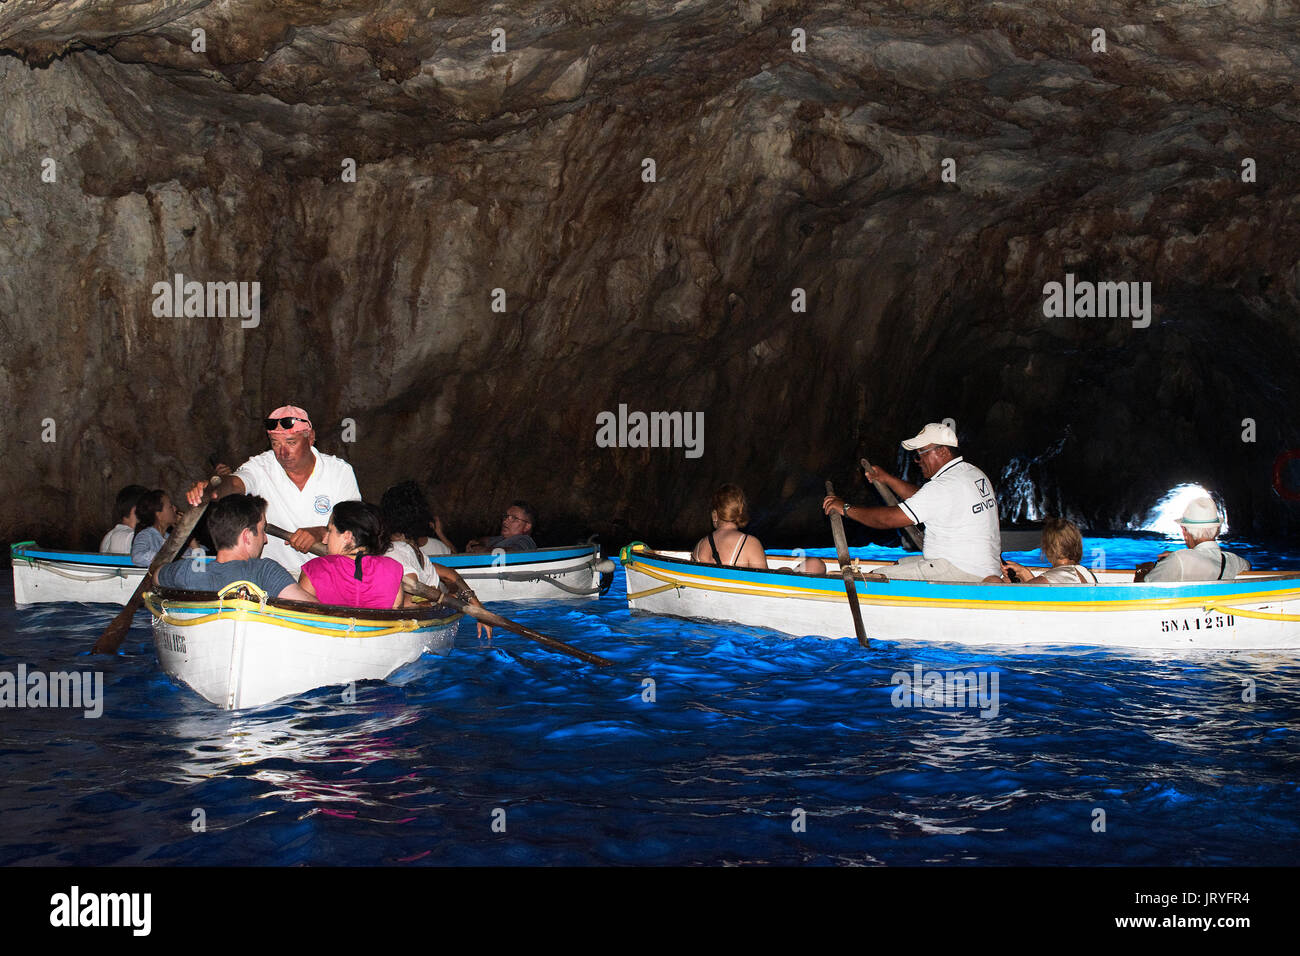 Besucher Touristen innerhalb der Blauen Grotte gotta Azzurra auf der Insel Capri im Golf von Neapel, Italien. Stockfoto